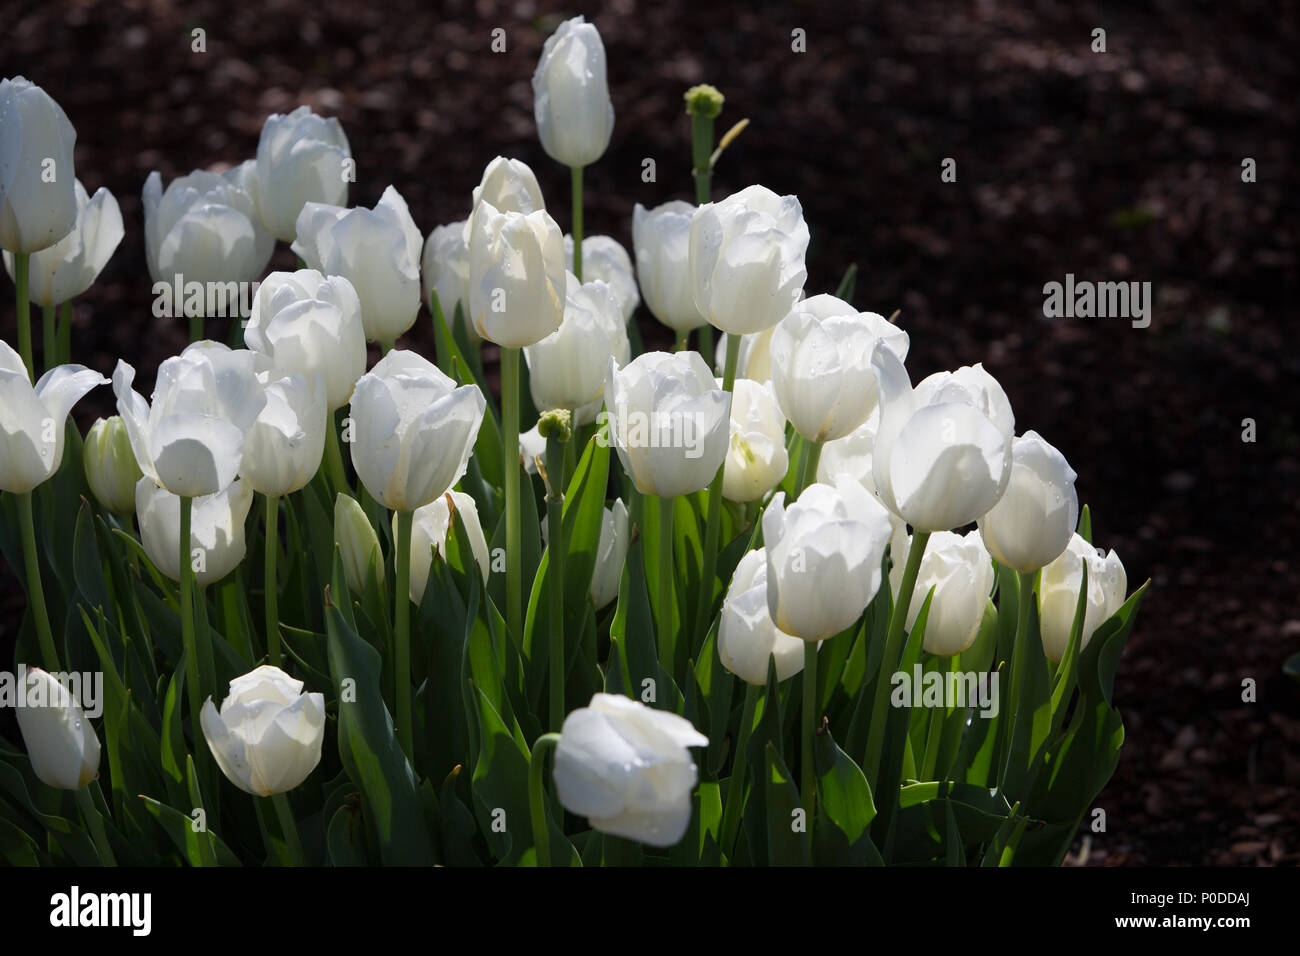 Bella tulipano bianco fiori con sfondo scuro, può utilizzare come sfondo Foto Stock